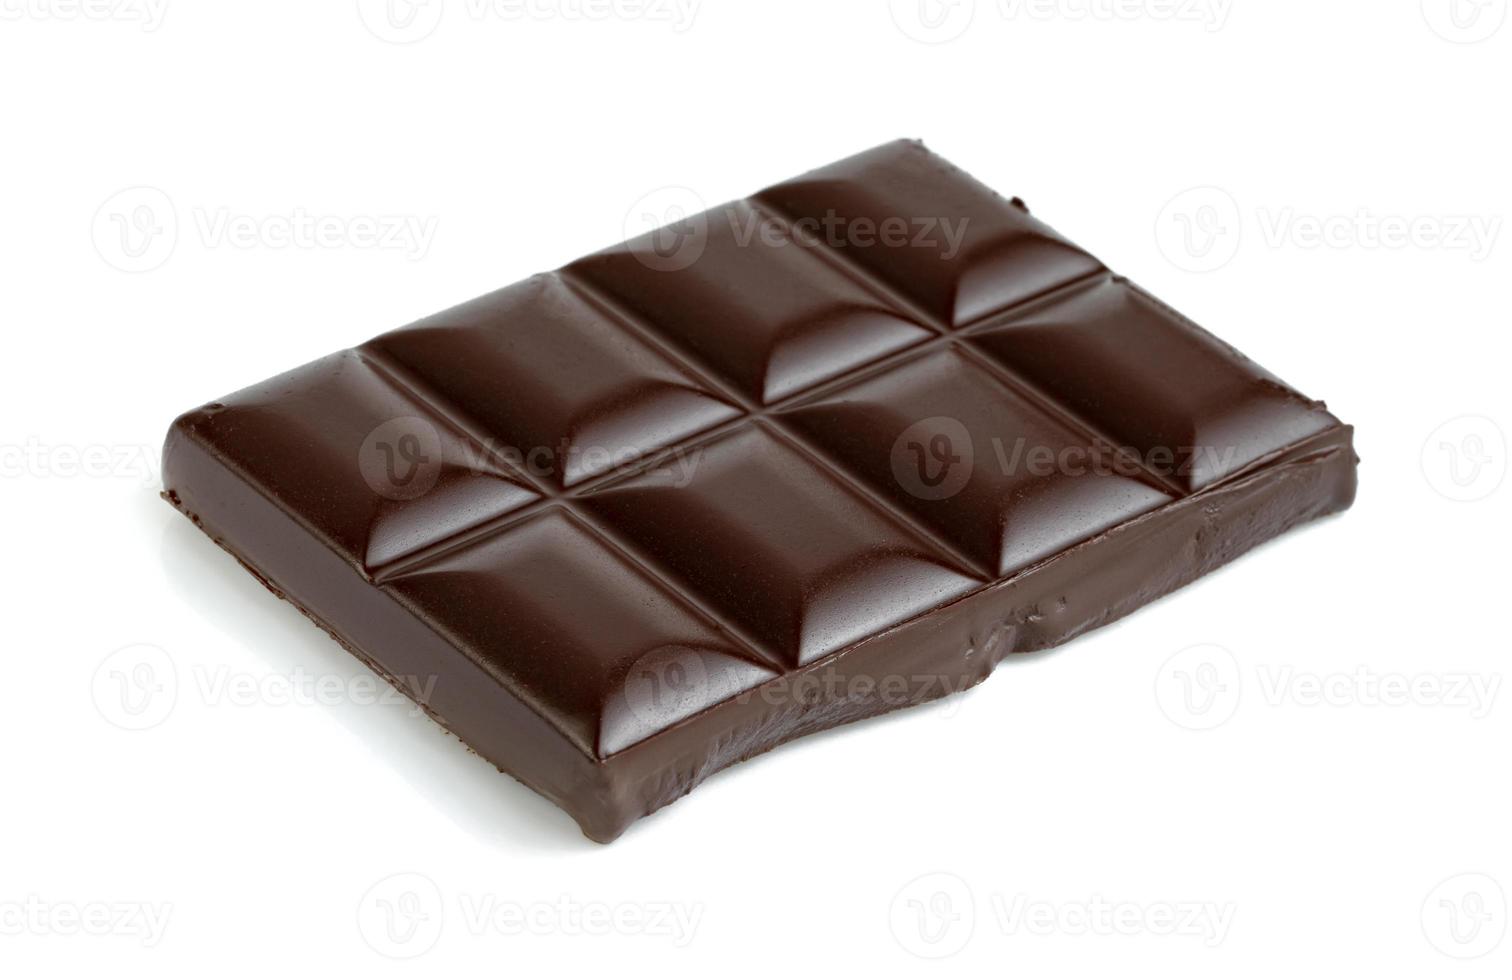 mörk chokladkaka isolerad på vit bakgrund foto